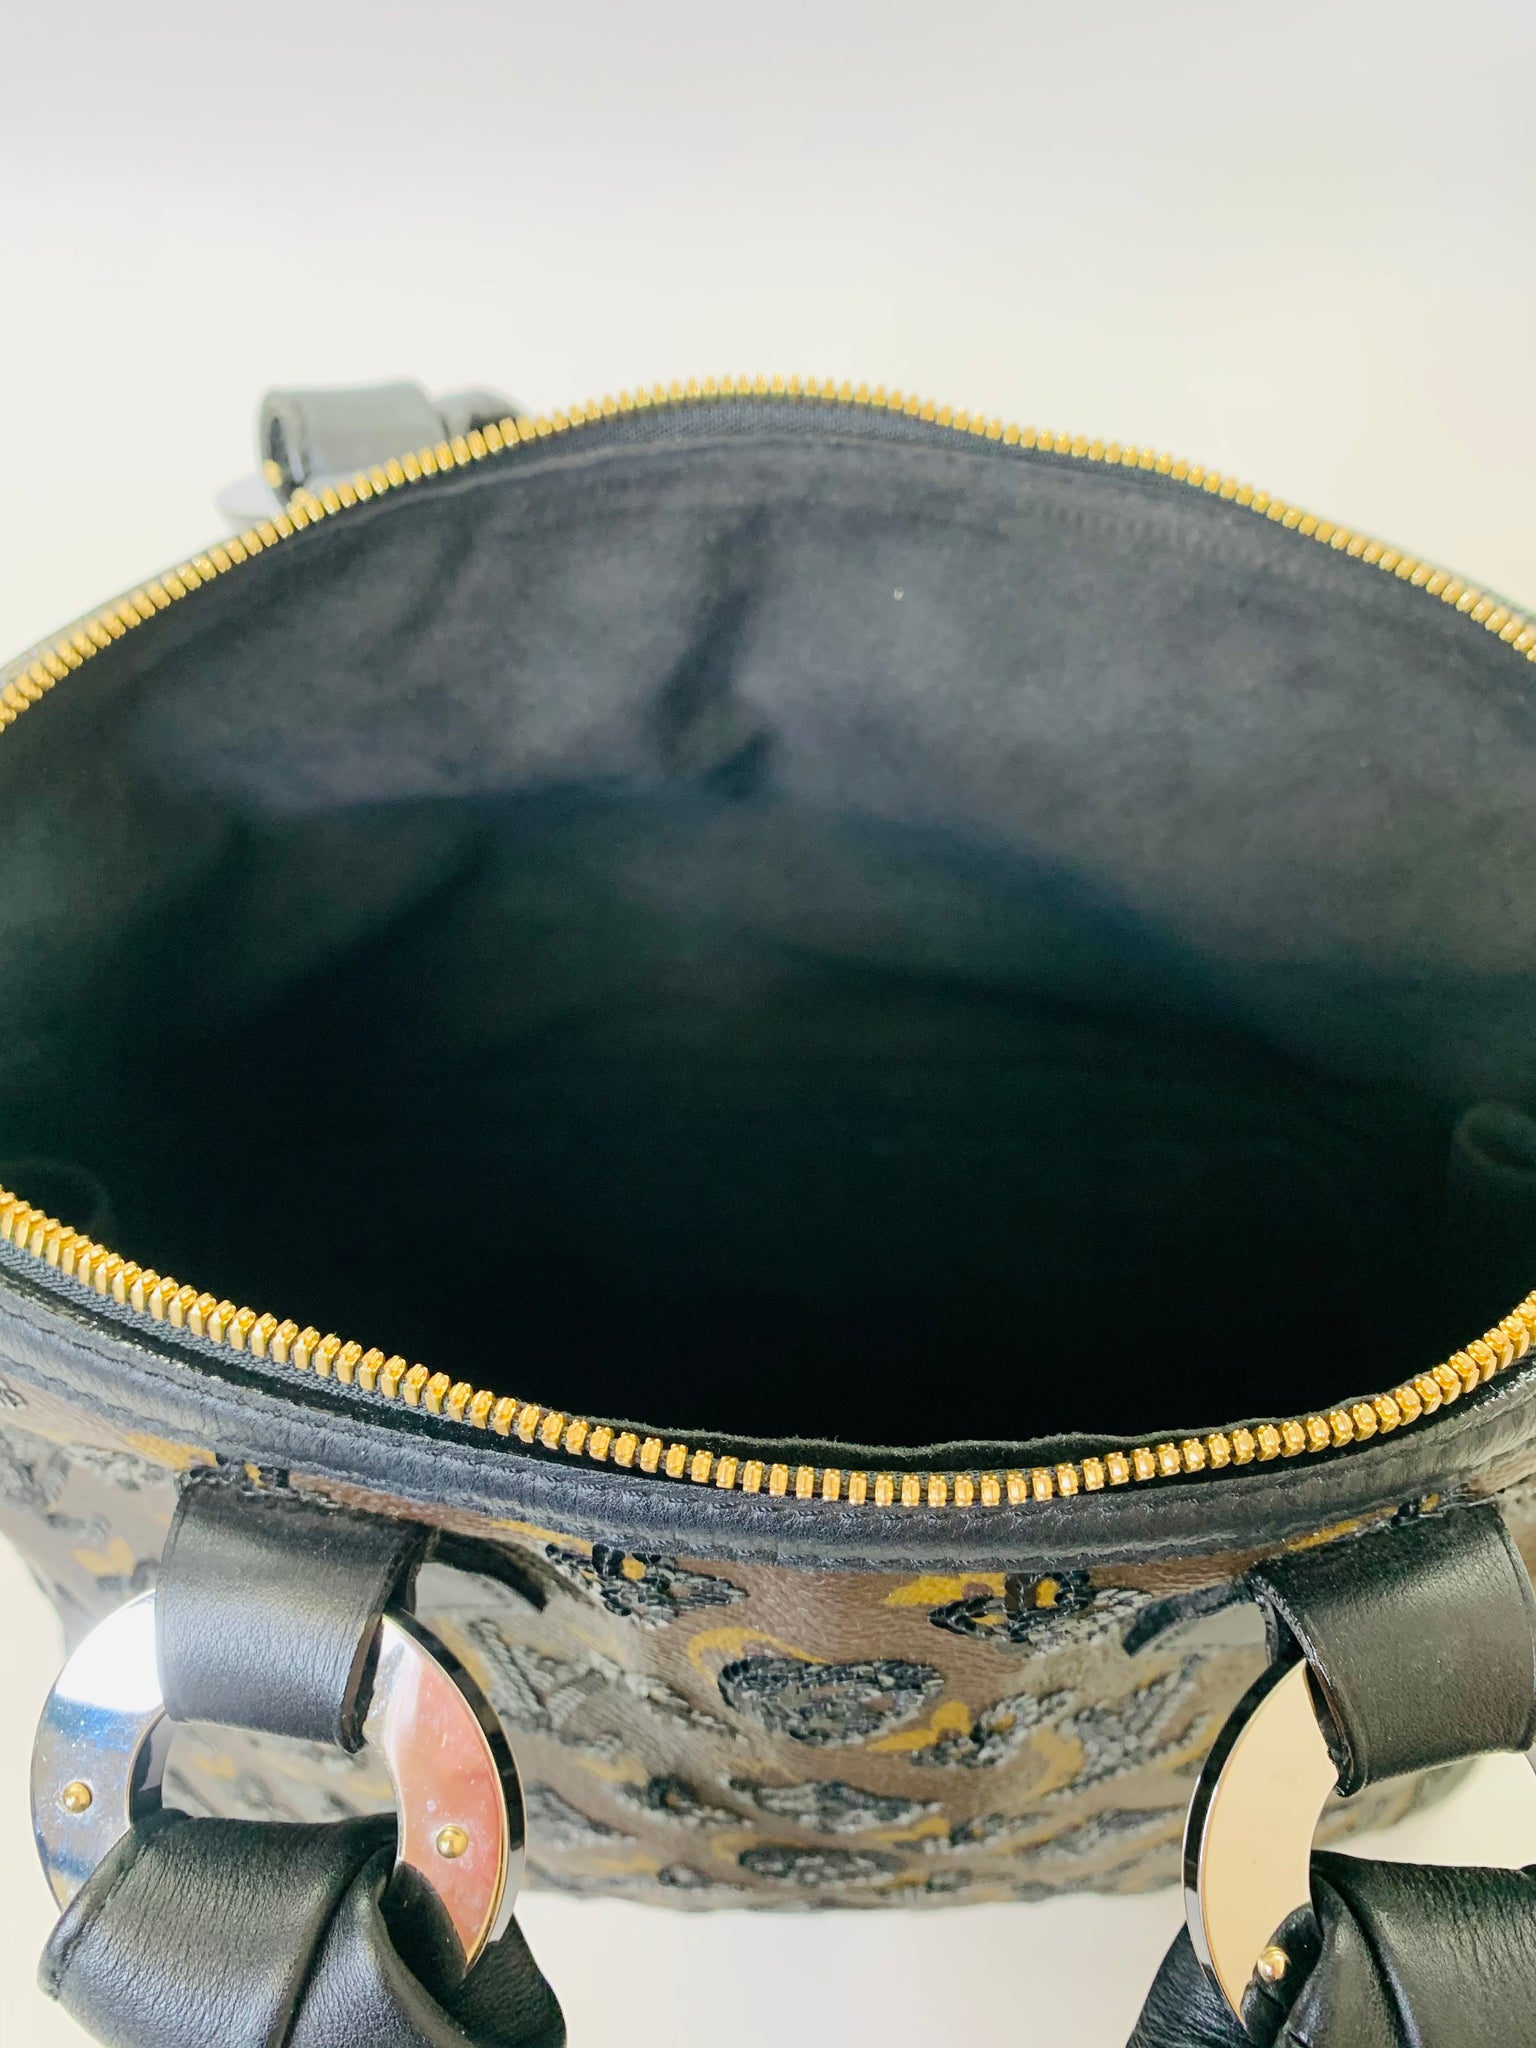 LOUIS VUITTON MONOGRAM Eclipse ALMA Handbag Satchel Purse Bag #1 Rise-on